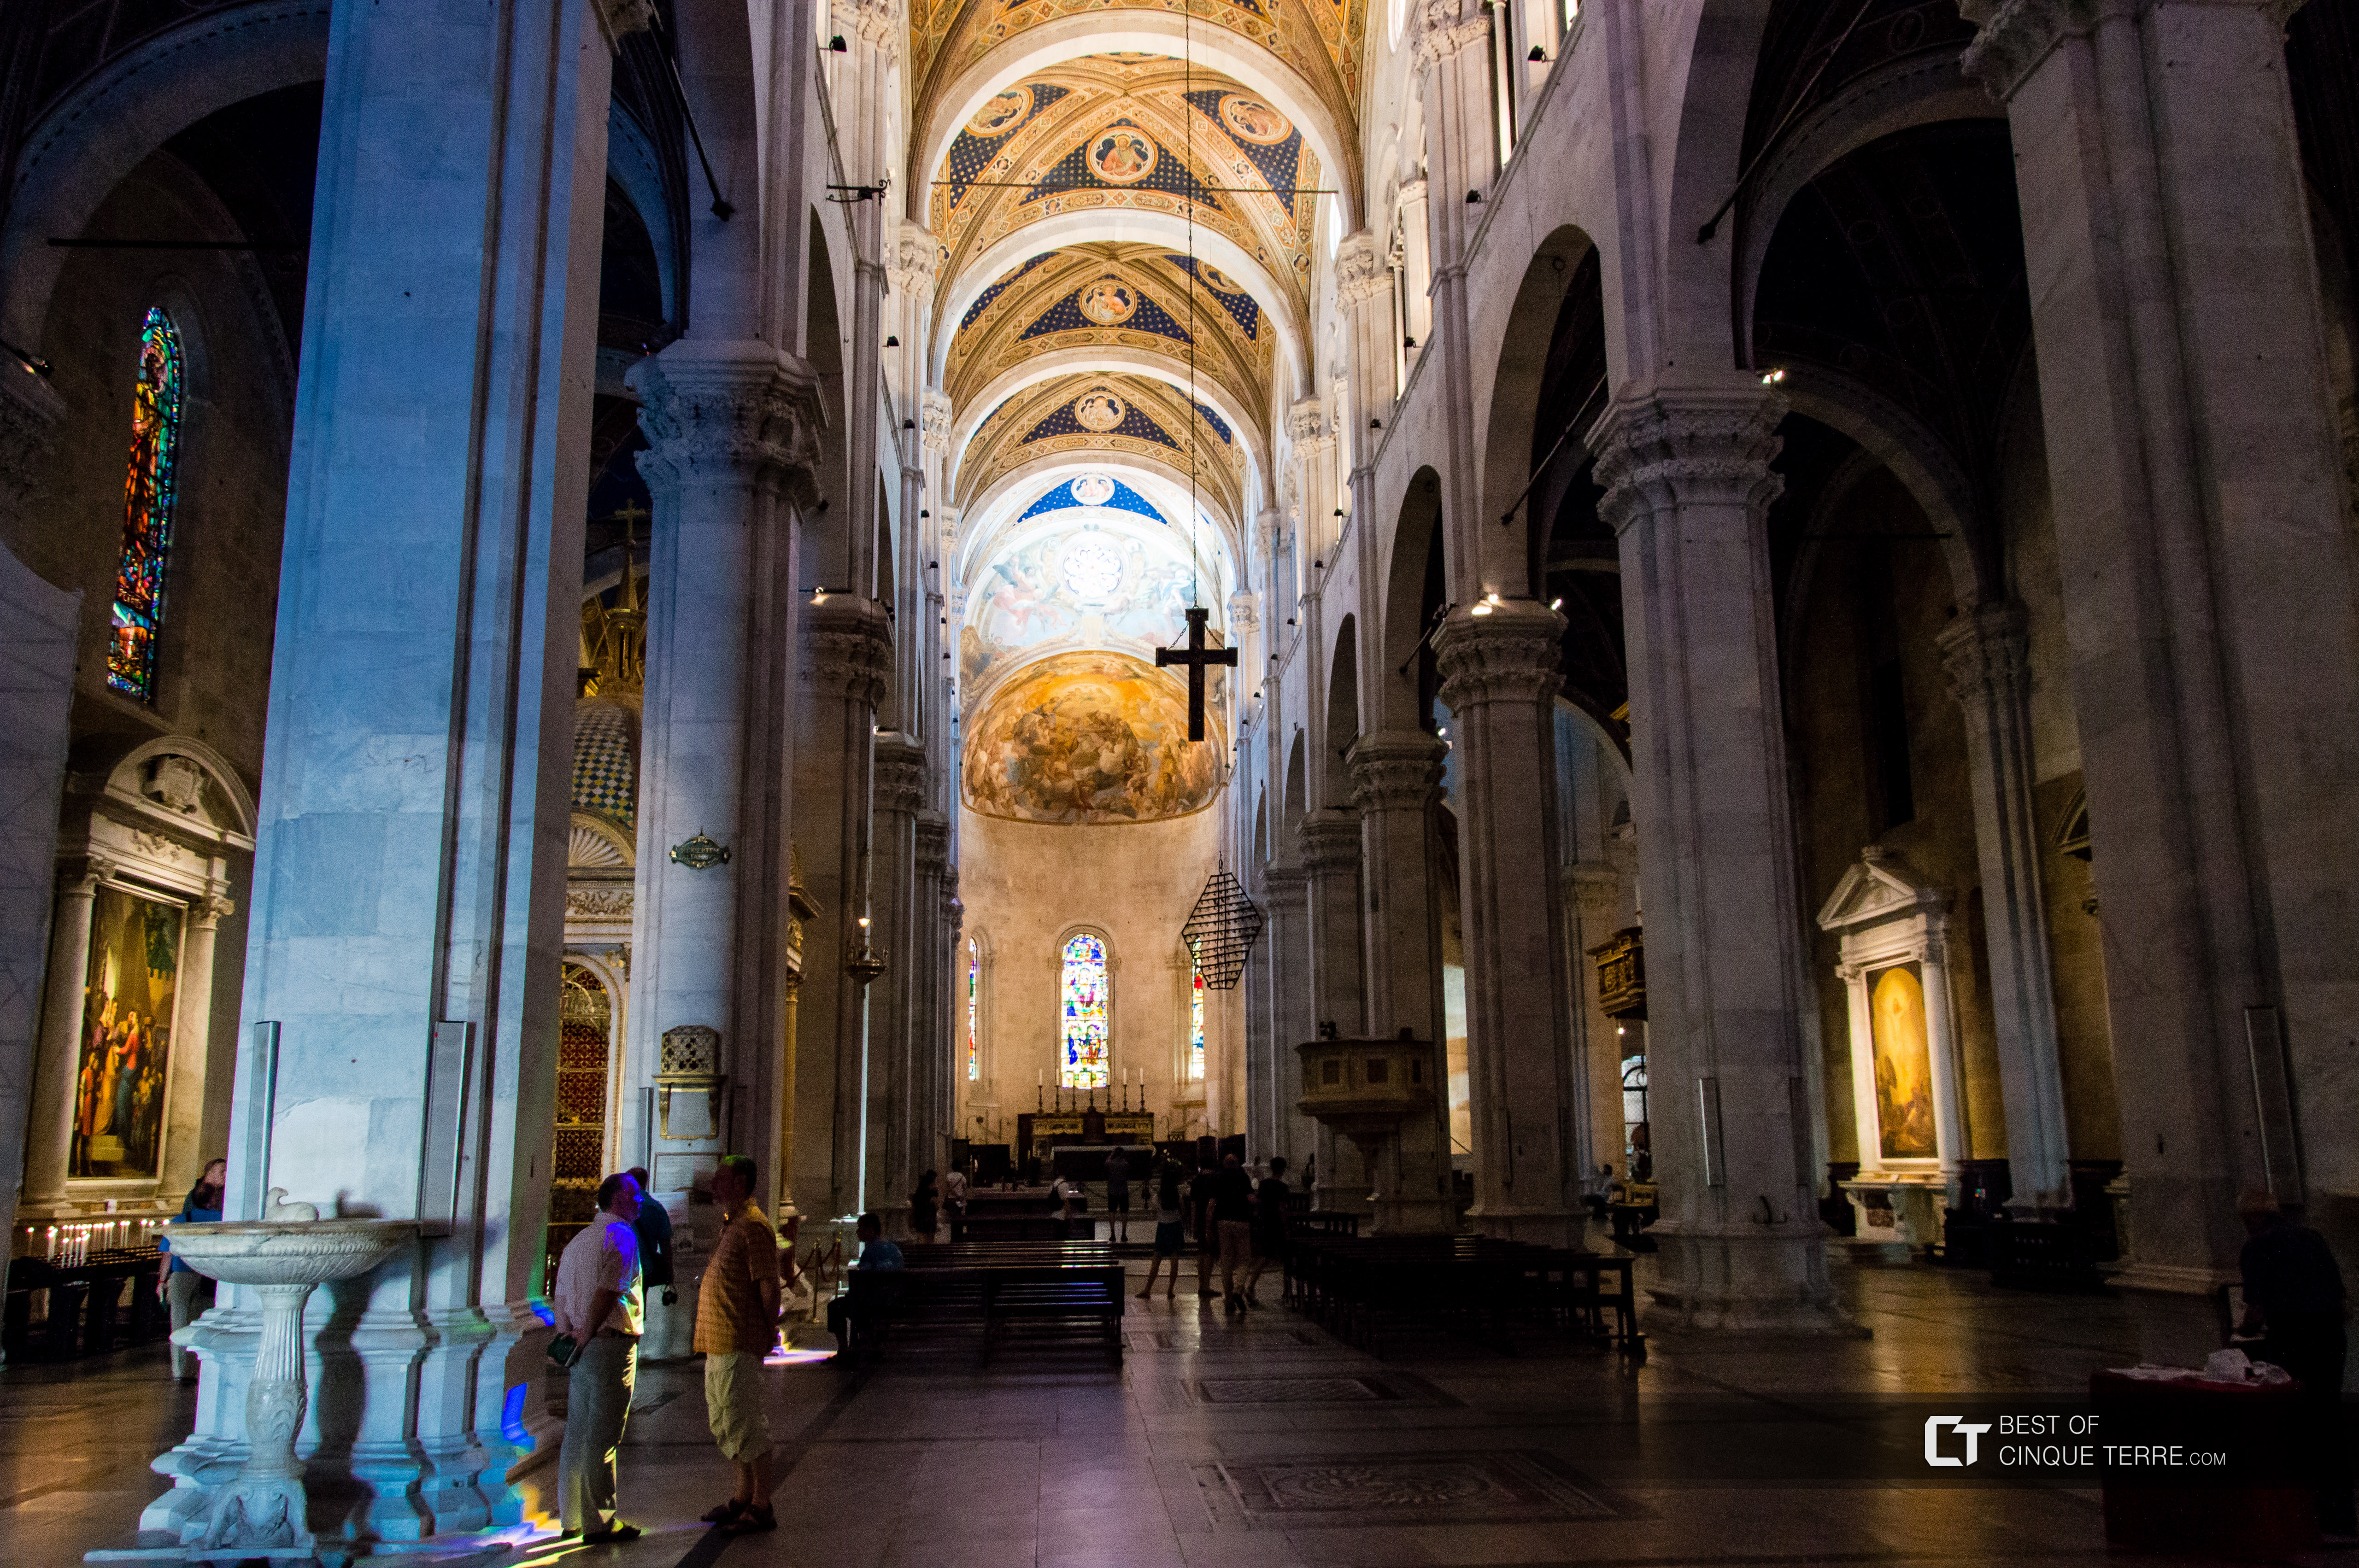 Innenansicht der Kathedrale, Lucca, Italien